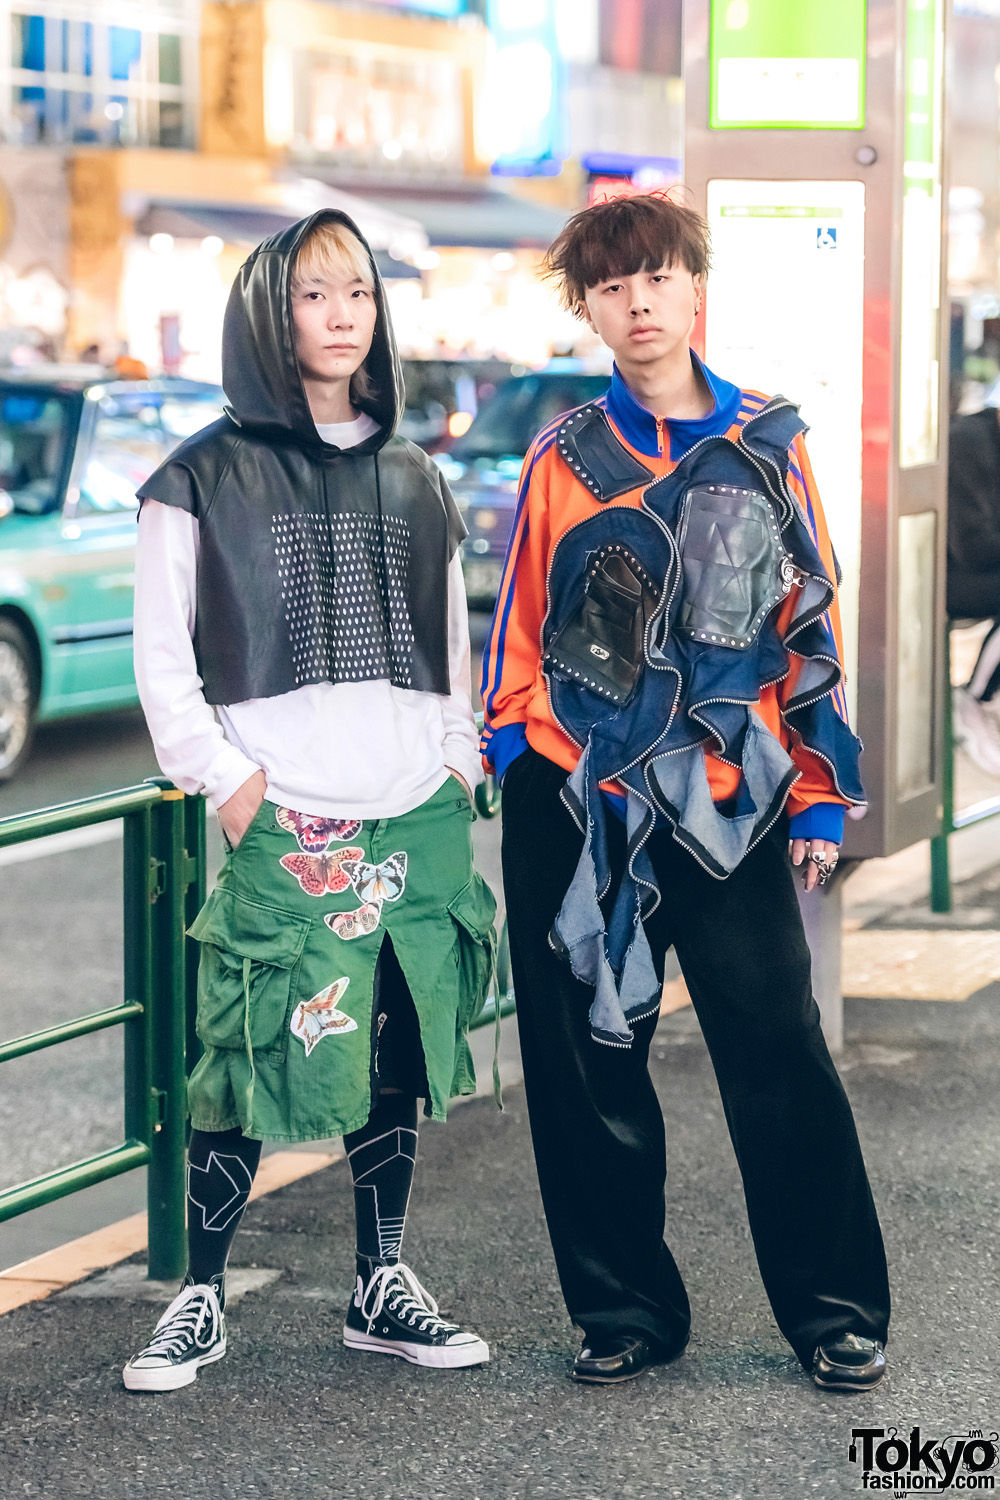 Tokyo Street Fashion Photos